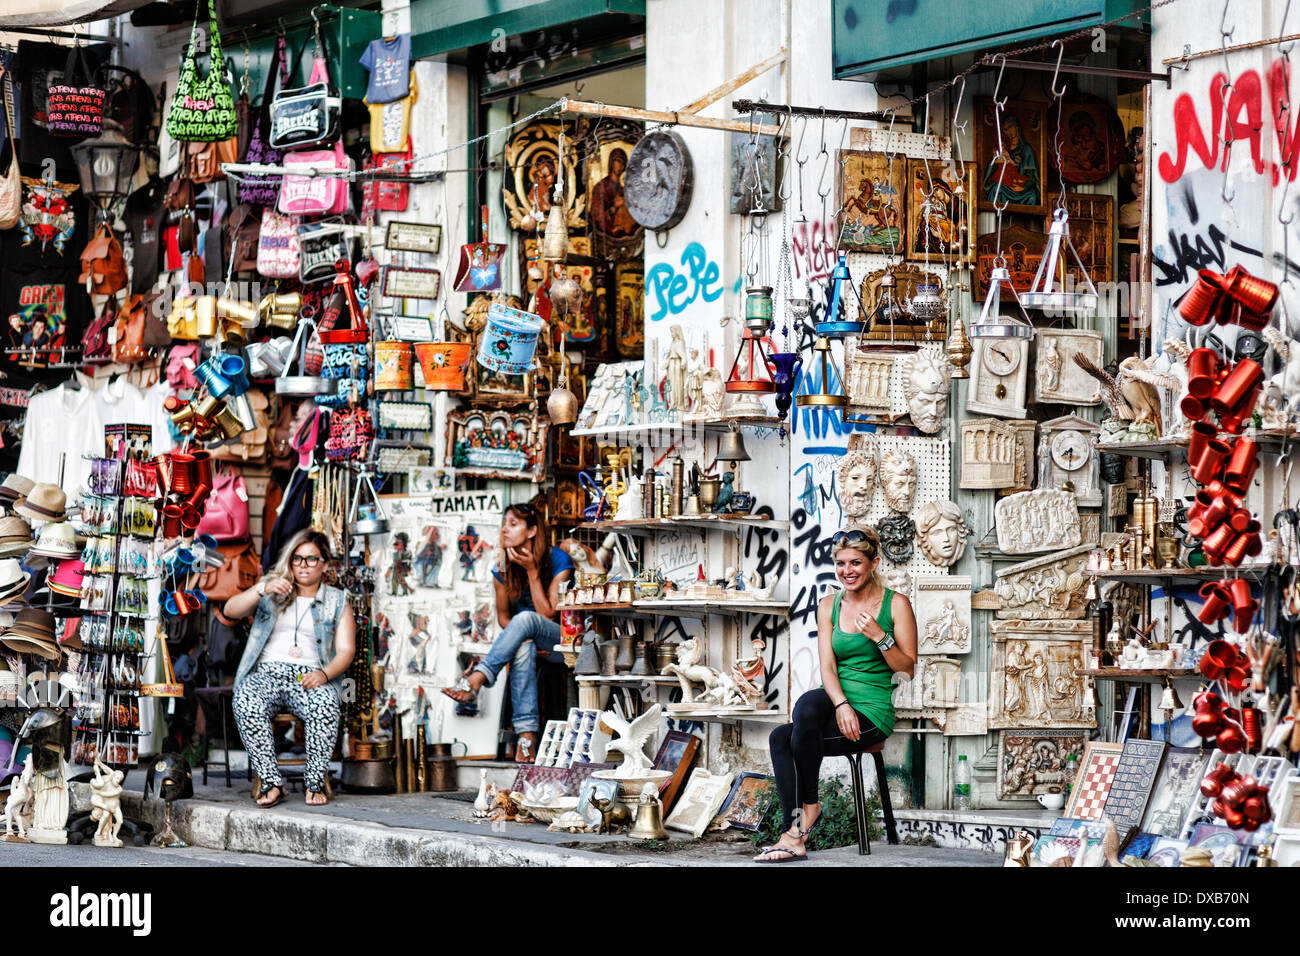 Magasin de souvenirs dans les rues d'Athènes, Grèce Banque D'Images